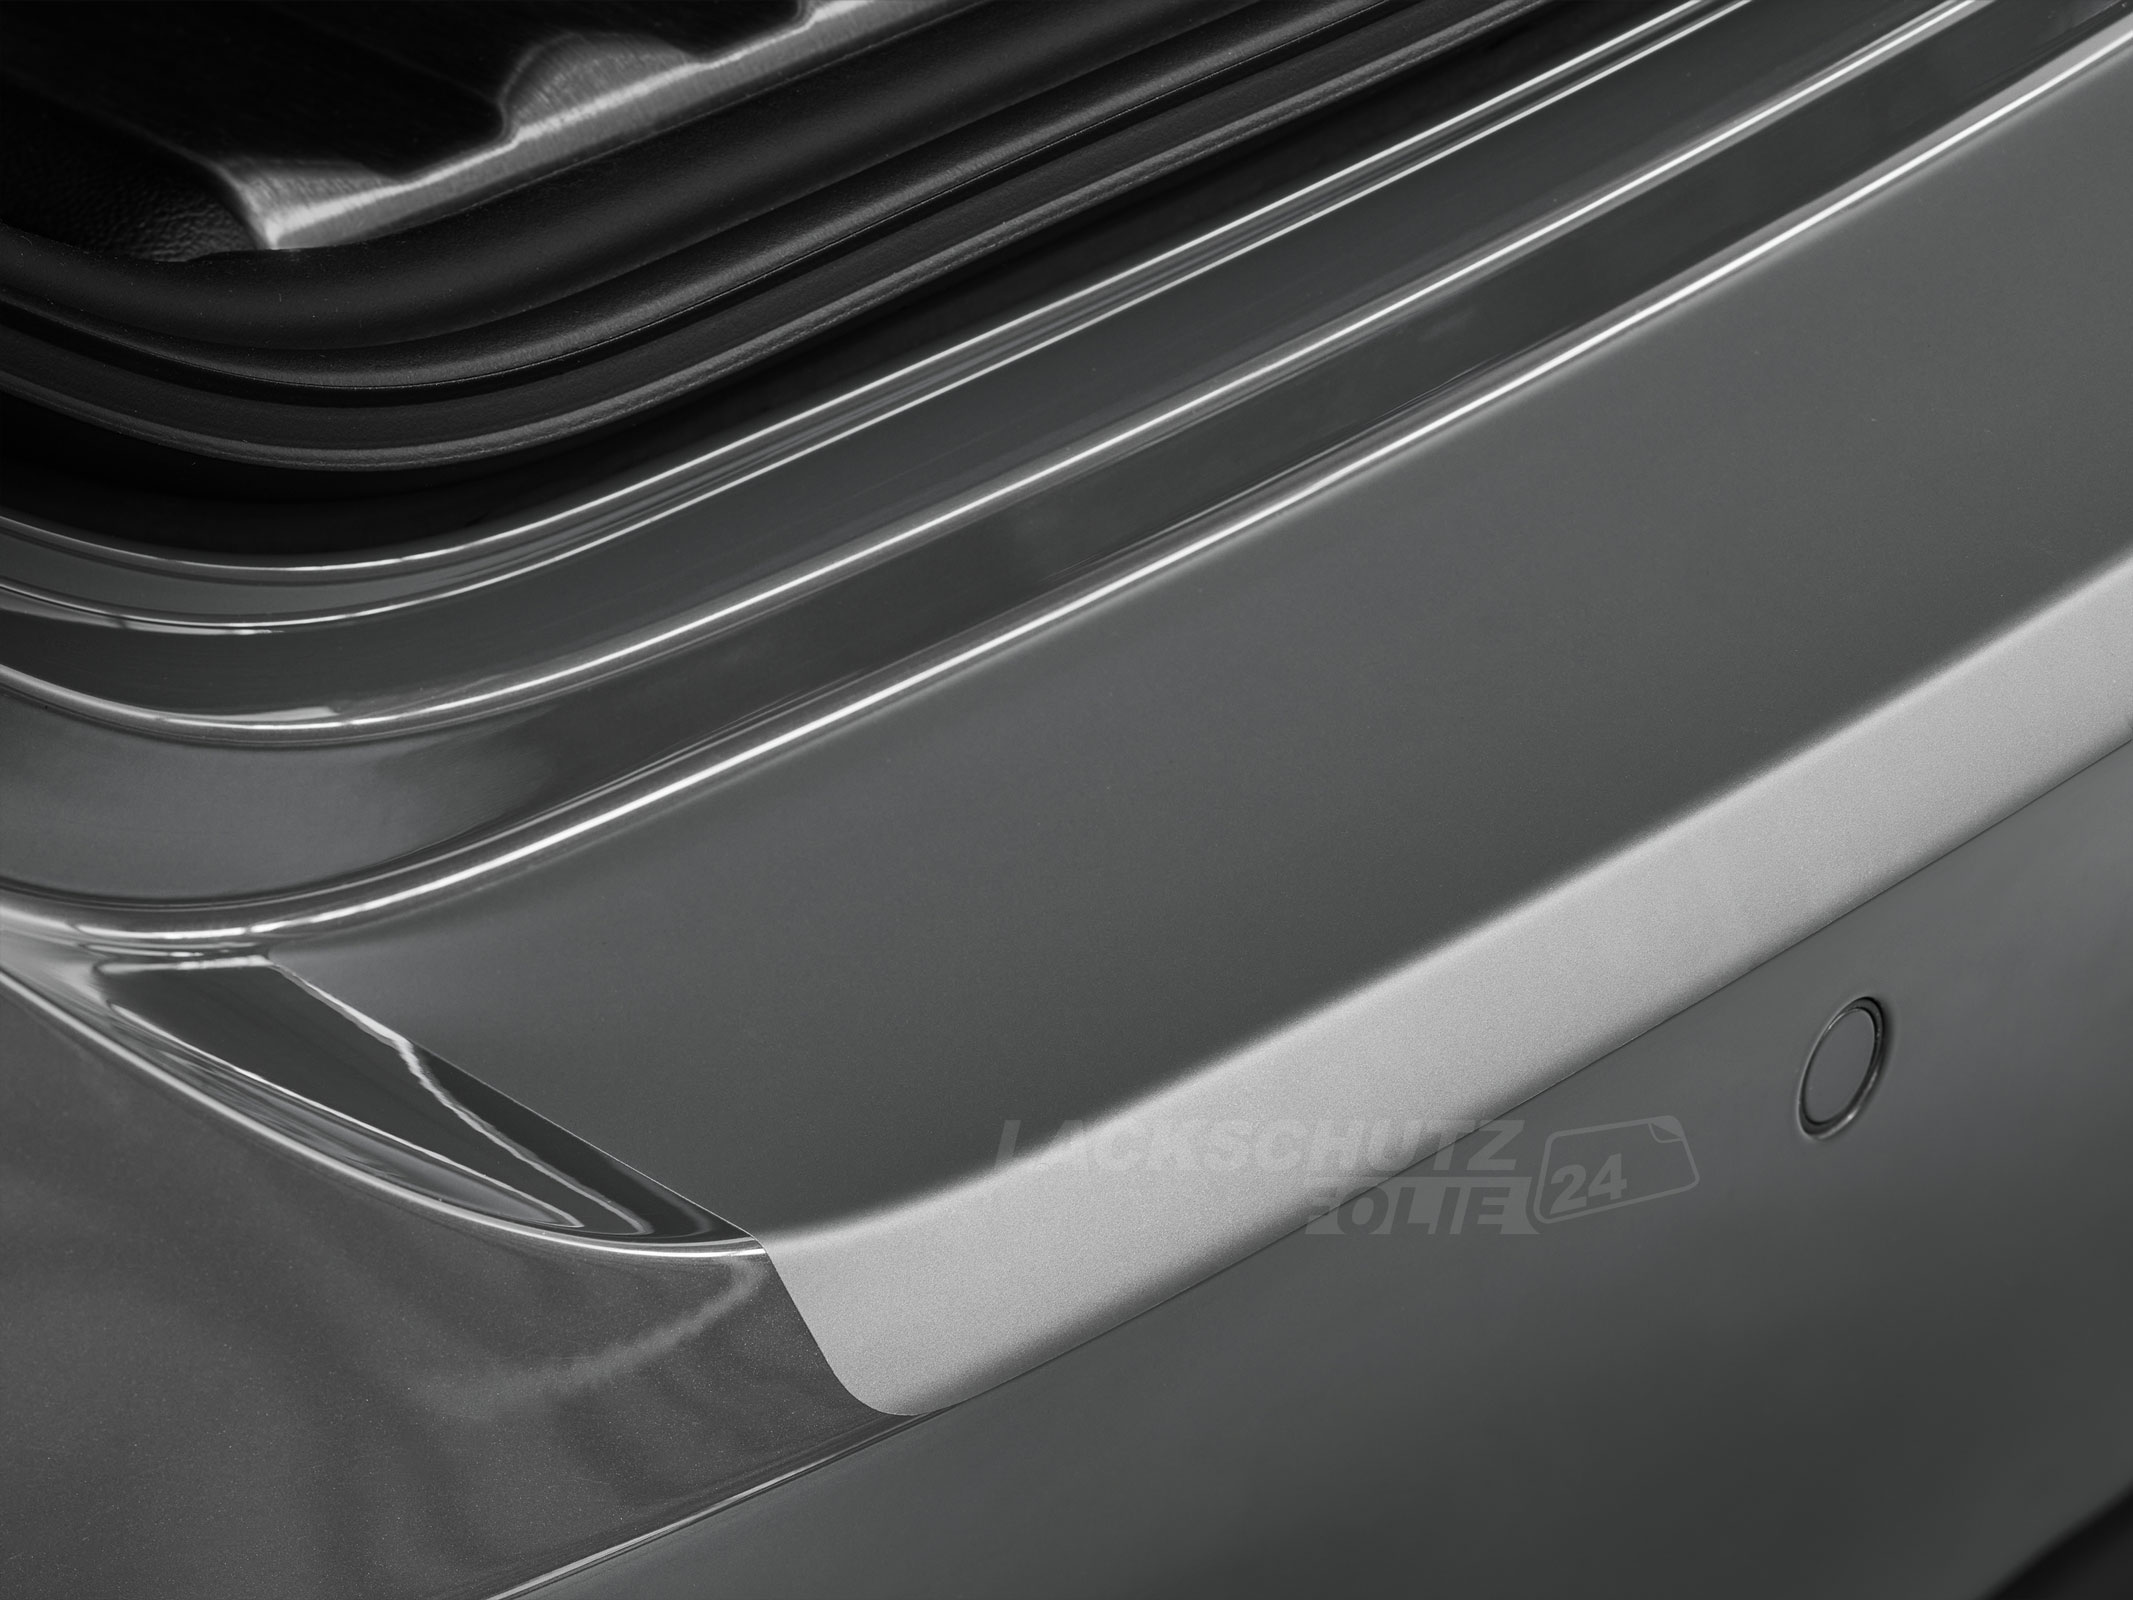 Ladekantenschutzfolie - Transparent Glatt MATT für Audi A5 Sportback Typ 8T, BJ 2009-2016